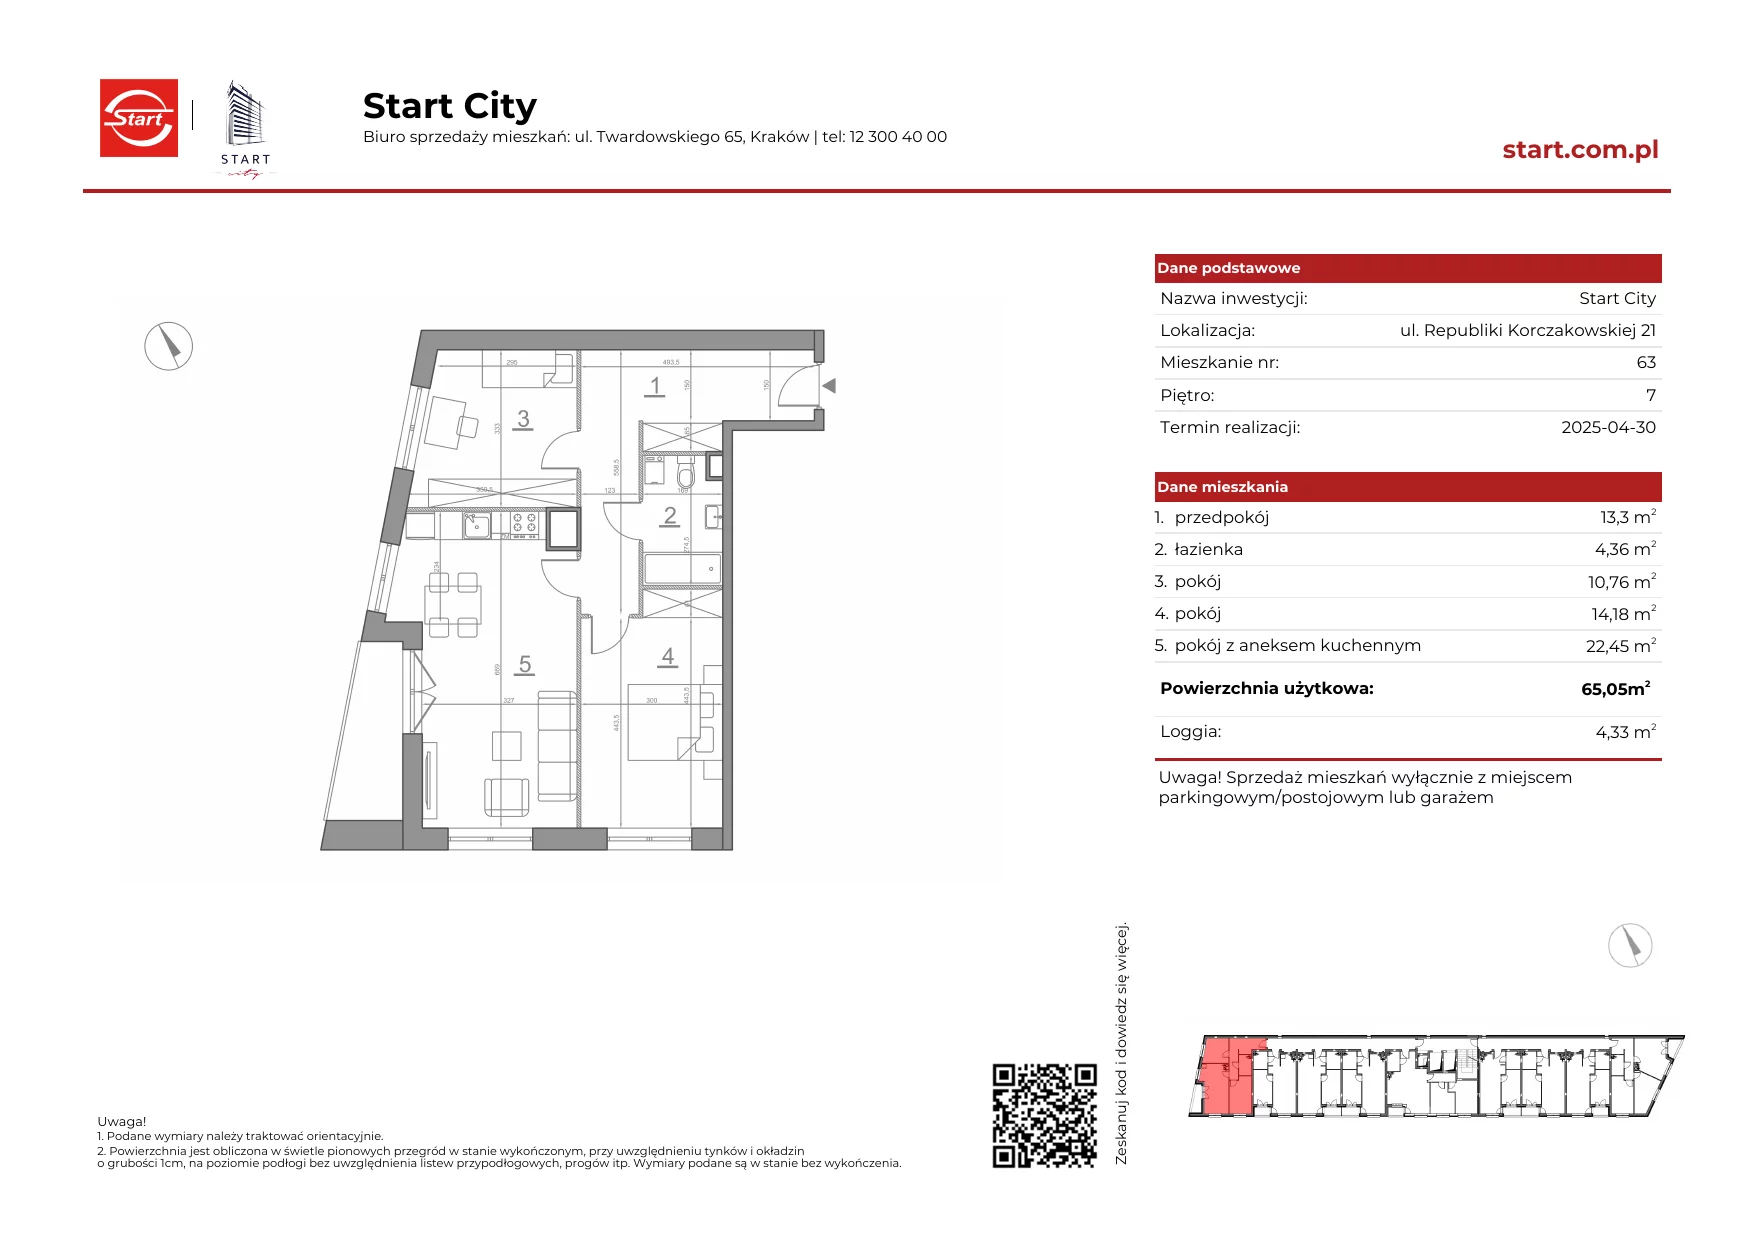 Mieszkanie 65,05 m², piętro 7, oferta nr 21/63, Start City, Kraków, Bieżanów-Prokocim, ul. Republiki Korczakowskiej 21